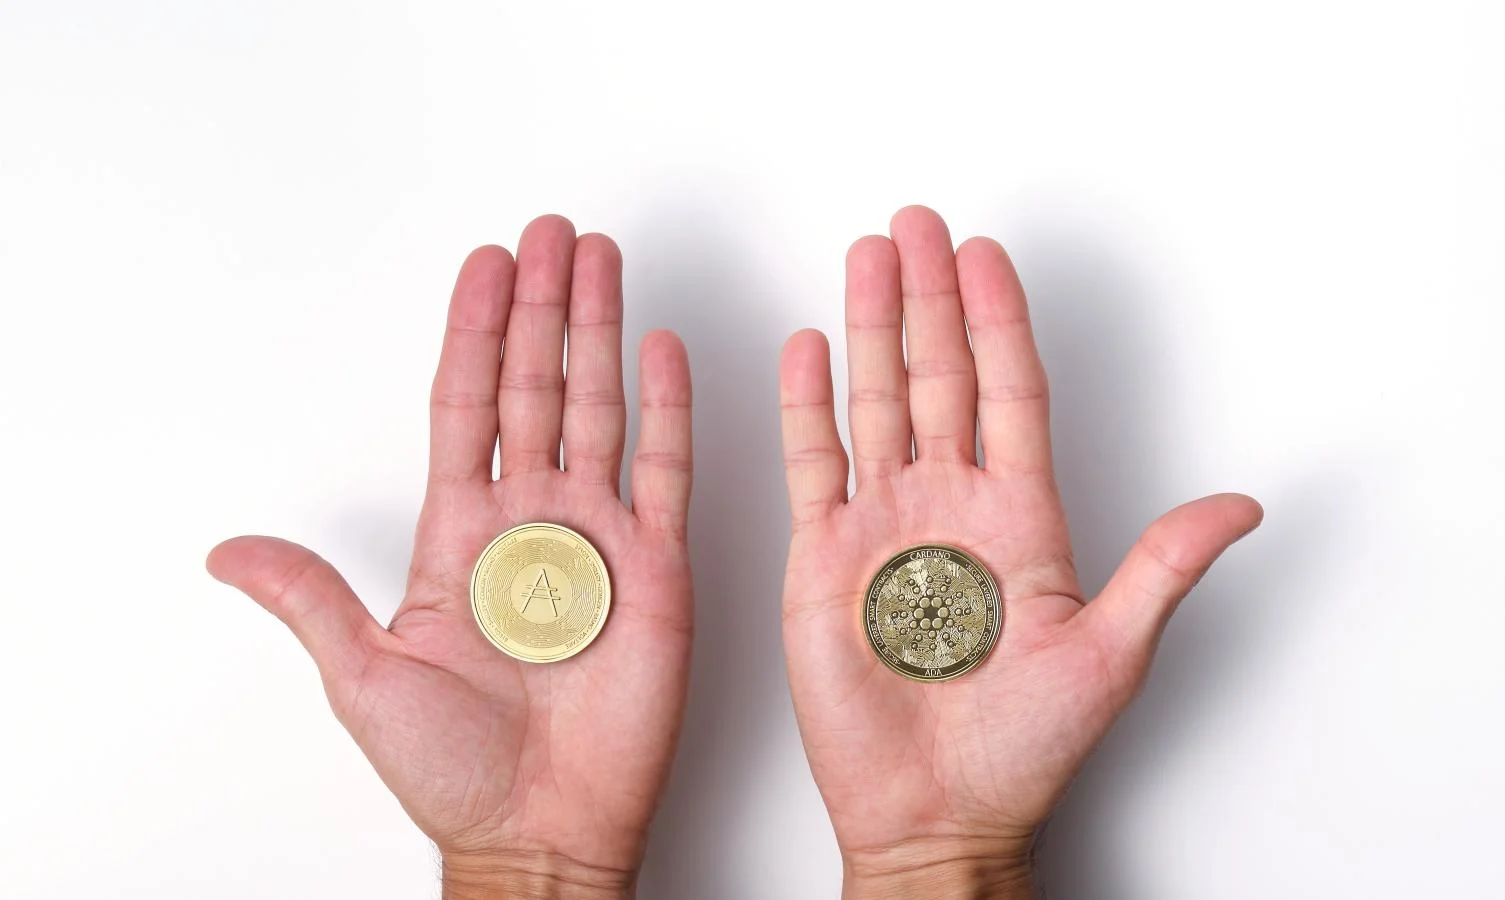  卡尔达诺加密货币在两个张开的手掌上 